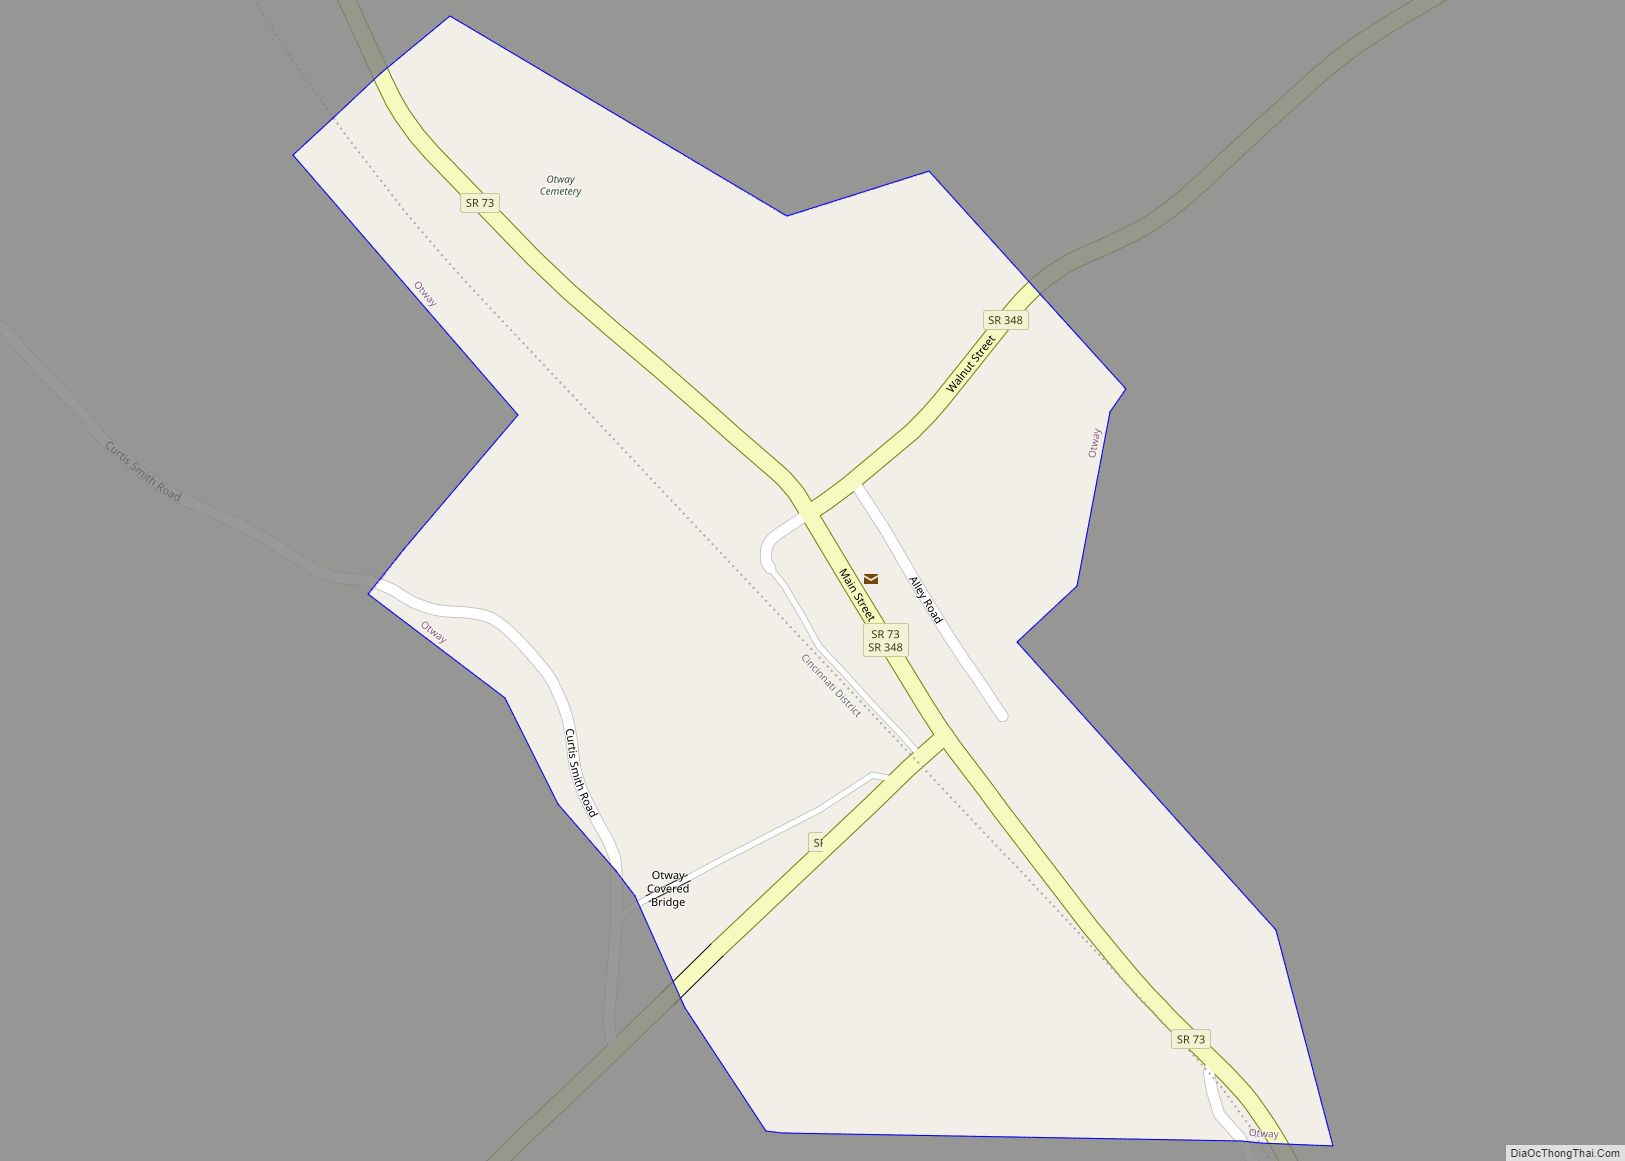 Map of Otway village